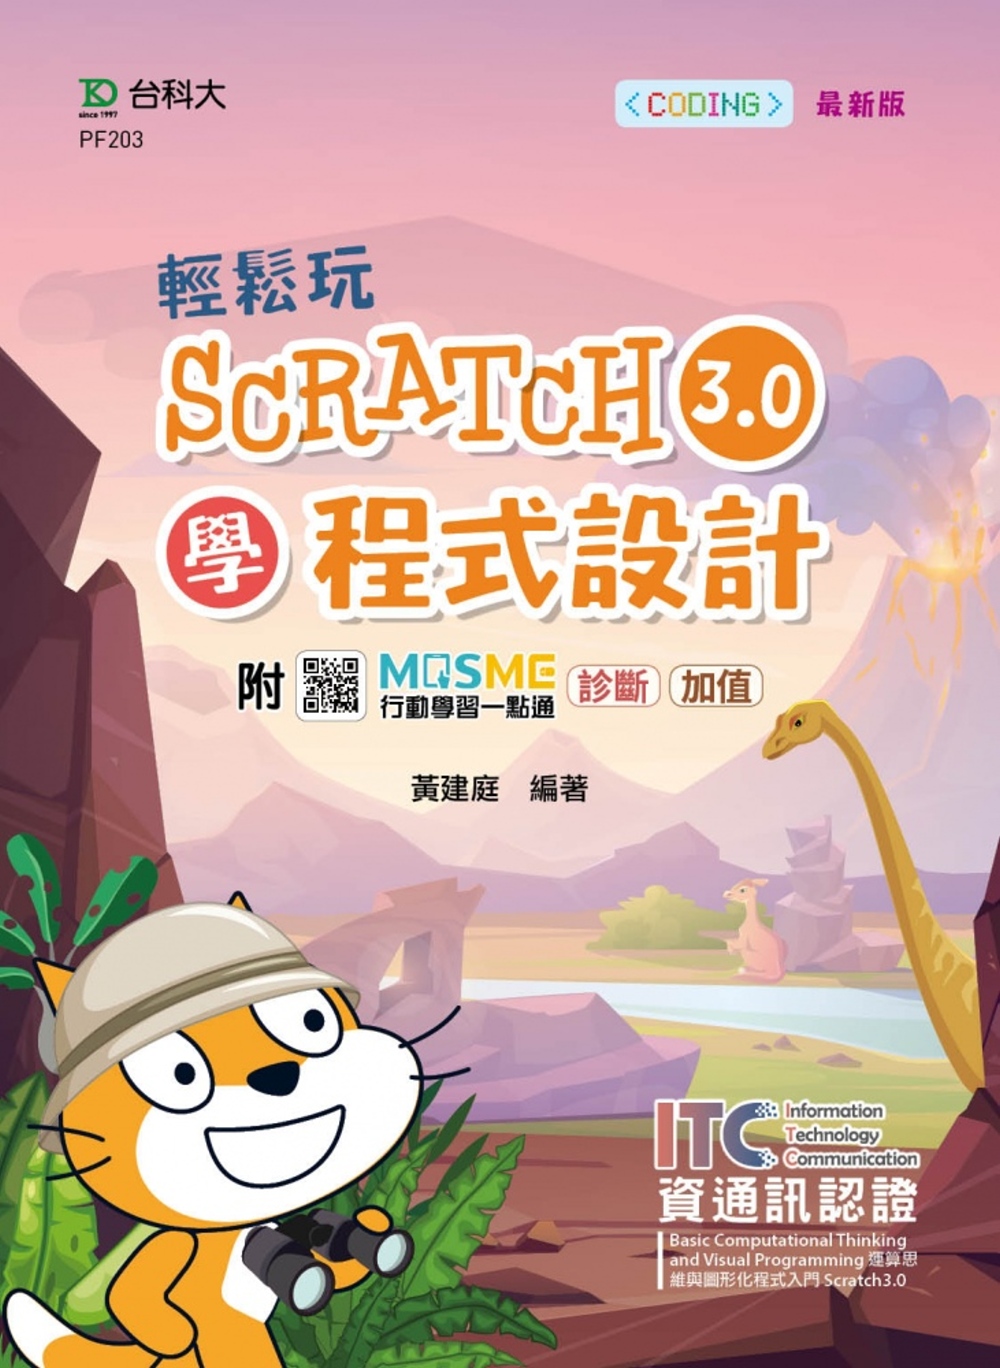 輕鬆玩Scratch3.0學程式設計 - 含ITC資通訊認證...